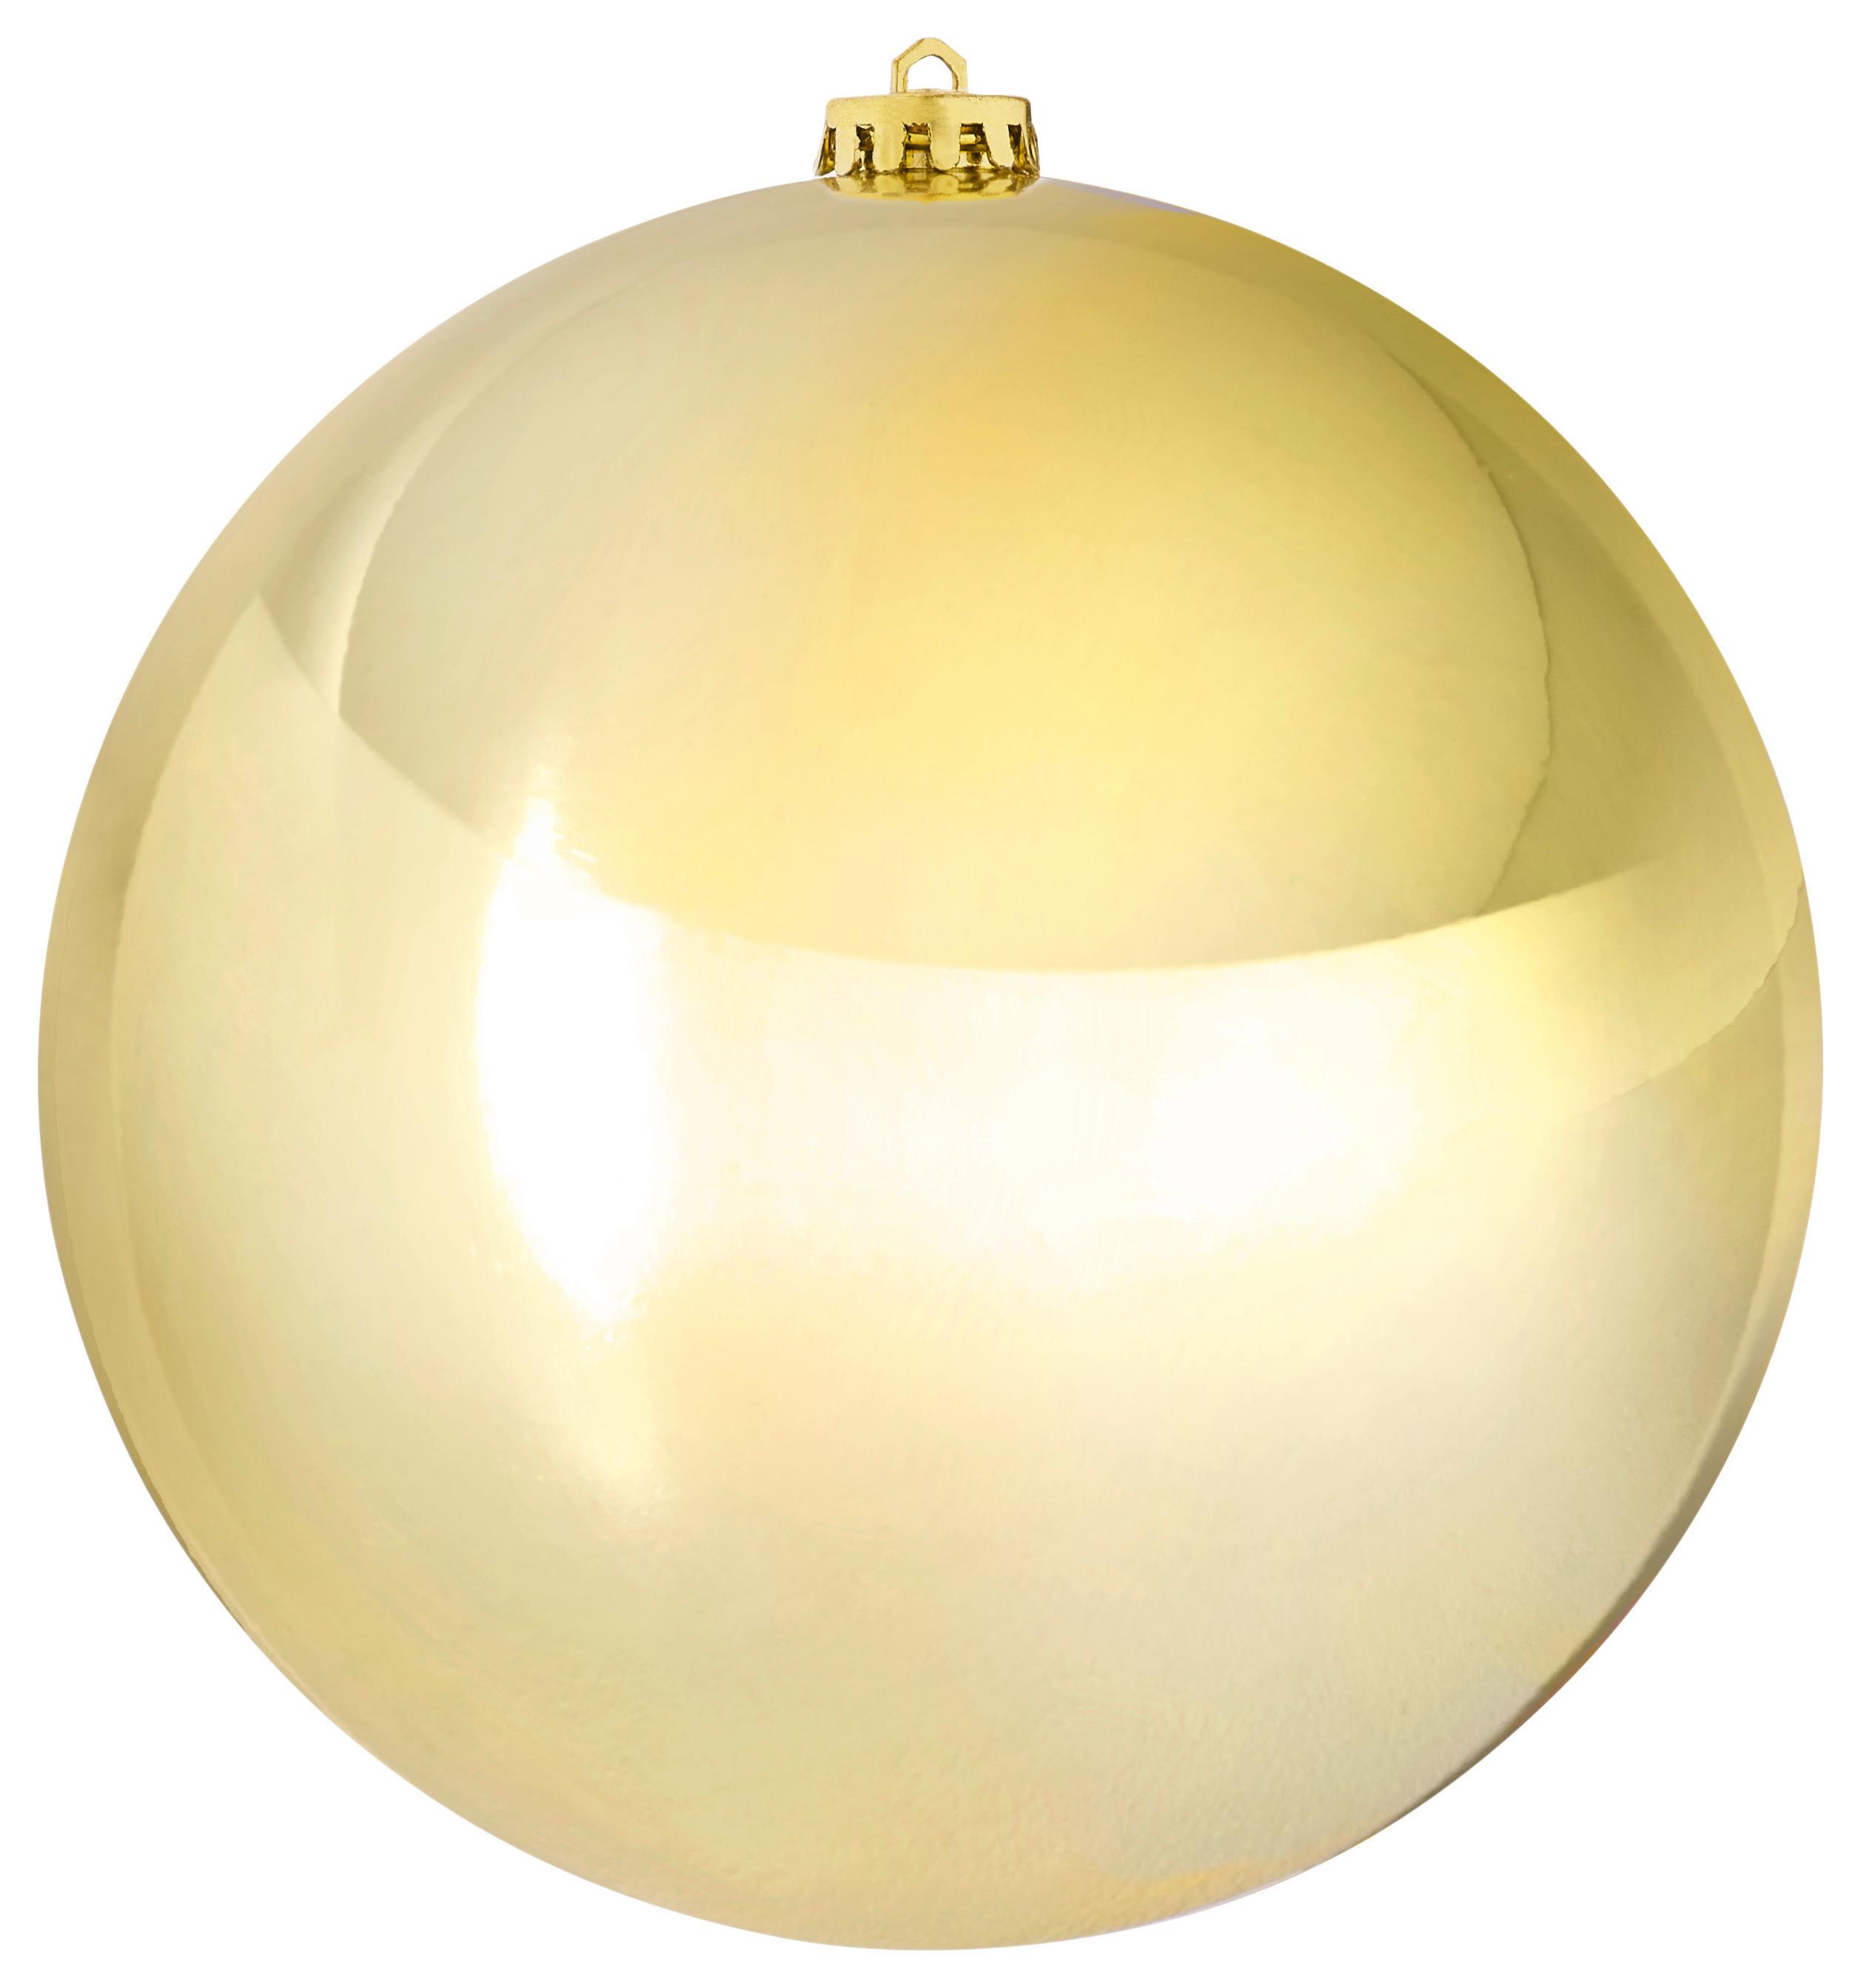 Vianočná Guľa Big -Paz- - zlatá, plast (20cm) - Modern Living